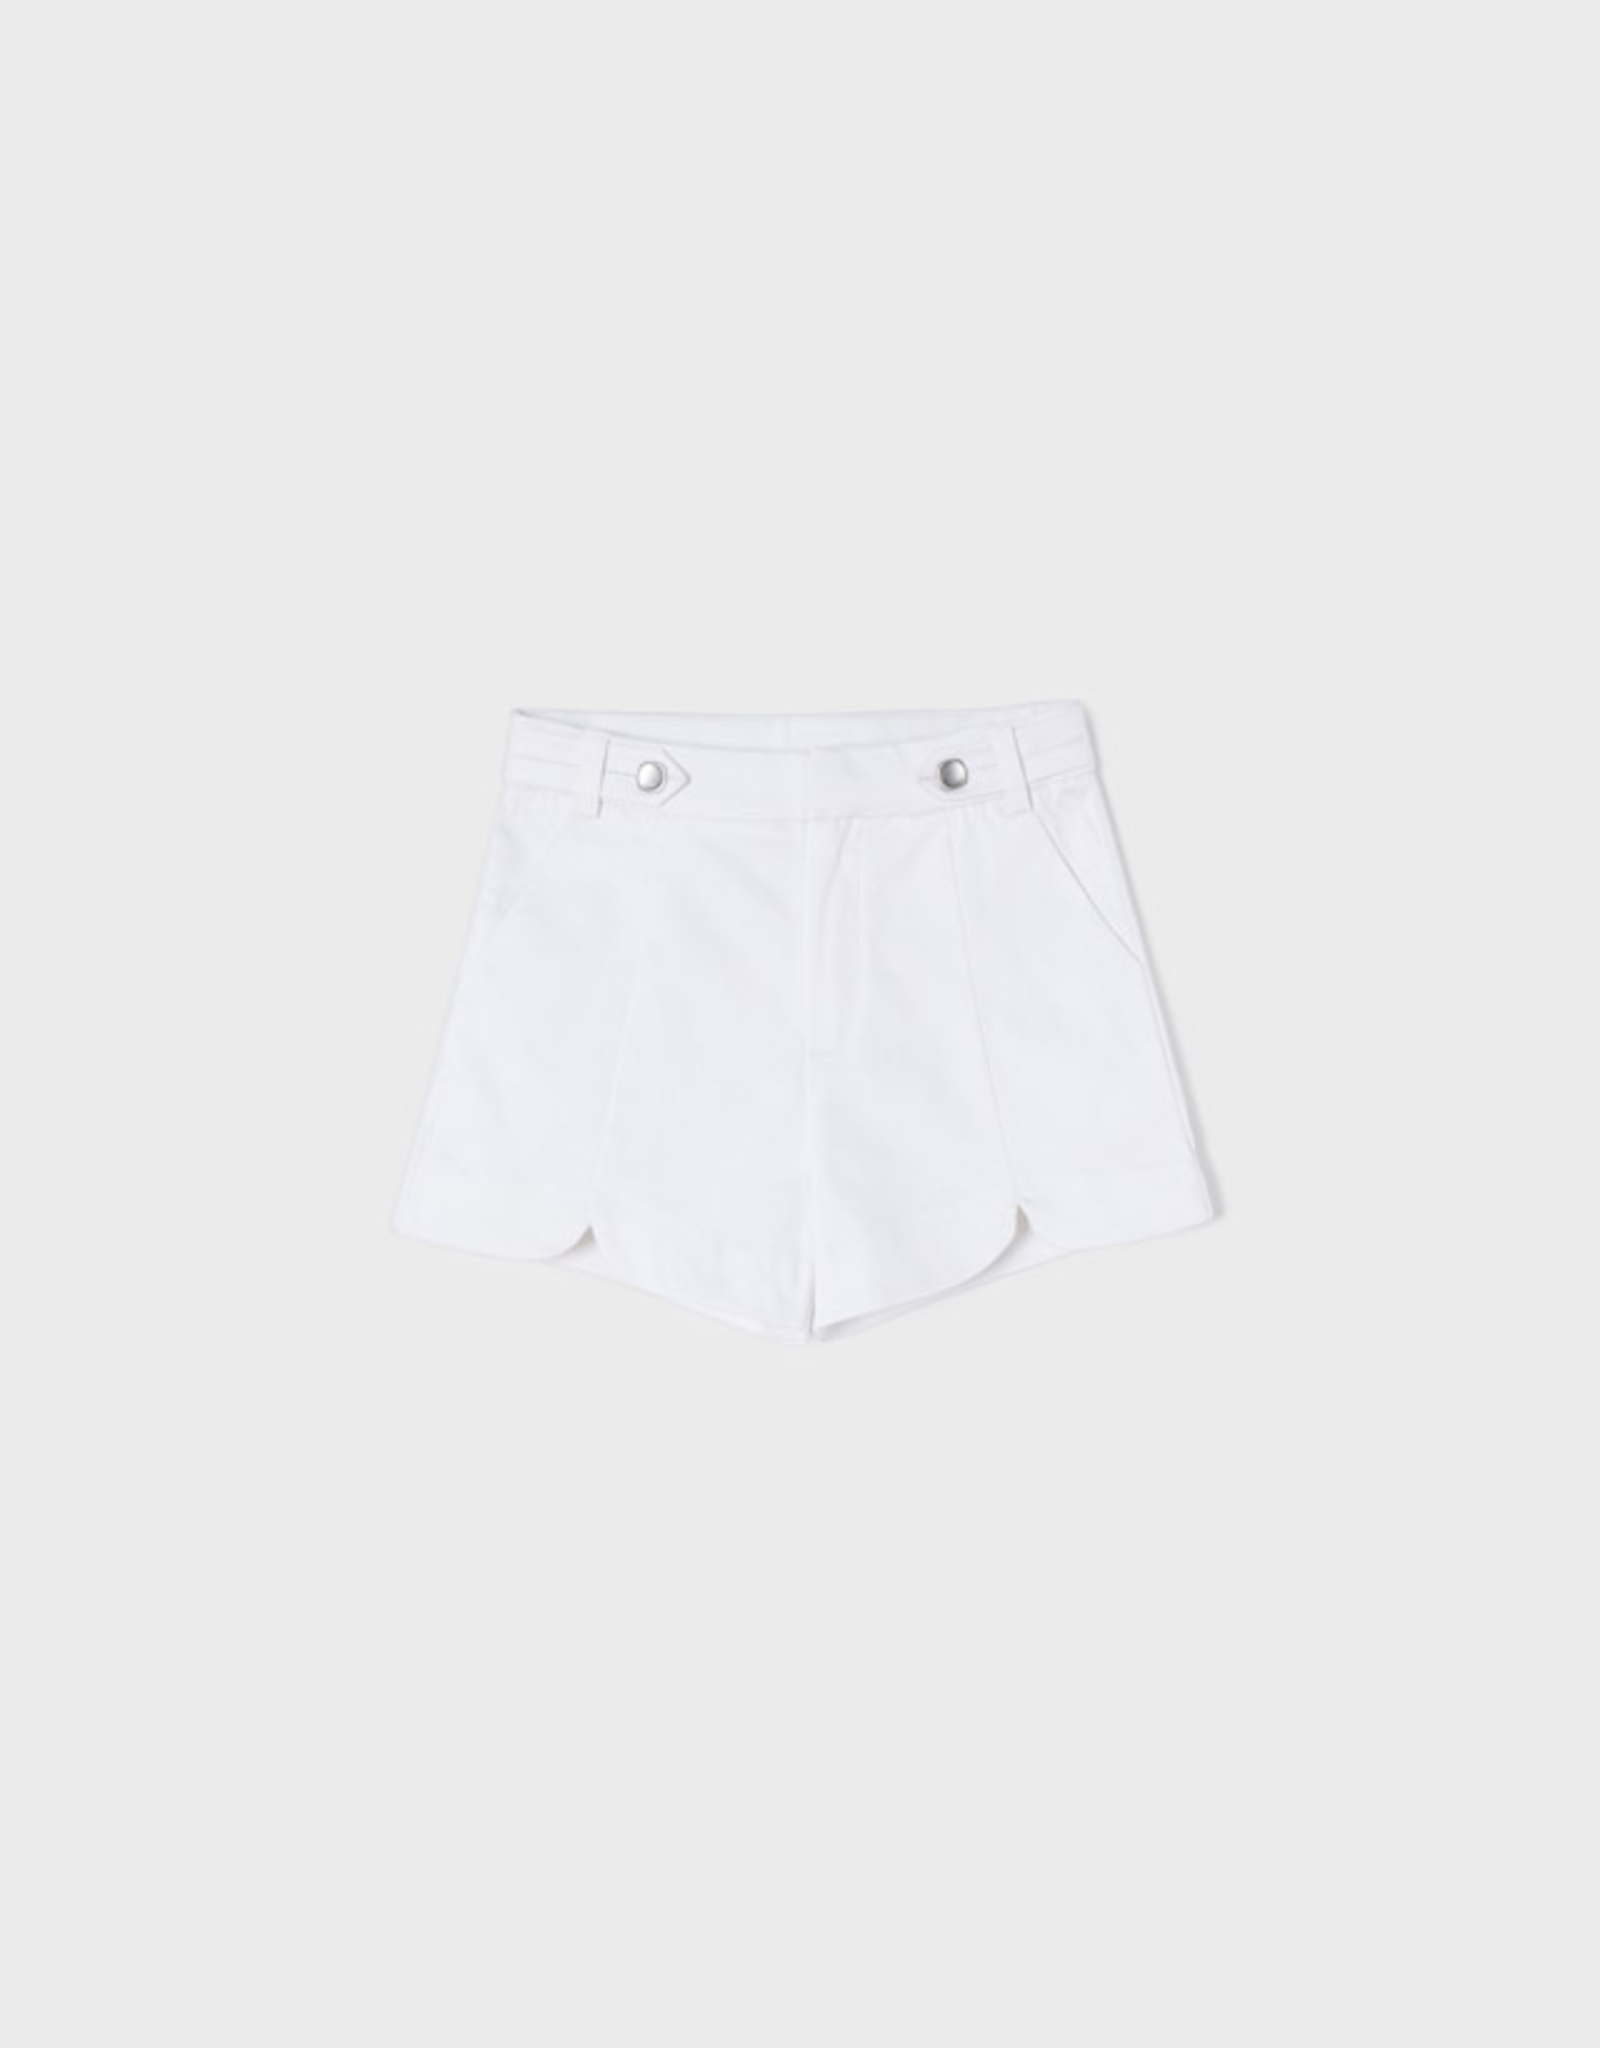 White Satin Shorts 3276 - Mini Macarons Boutique